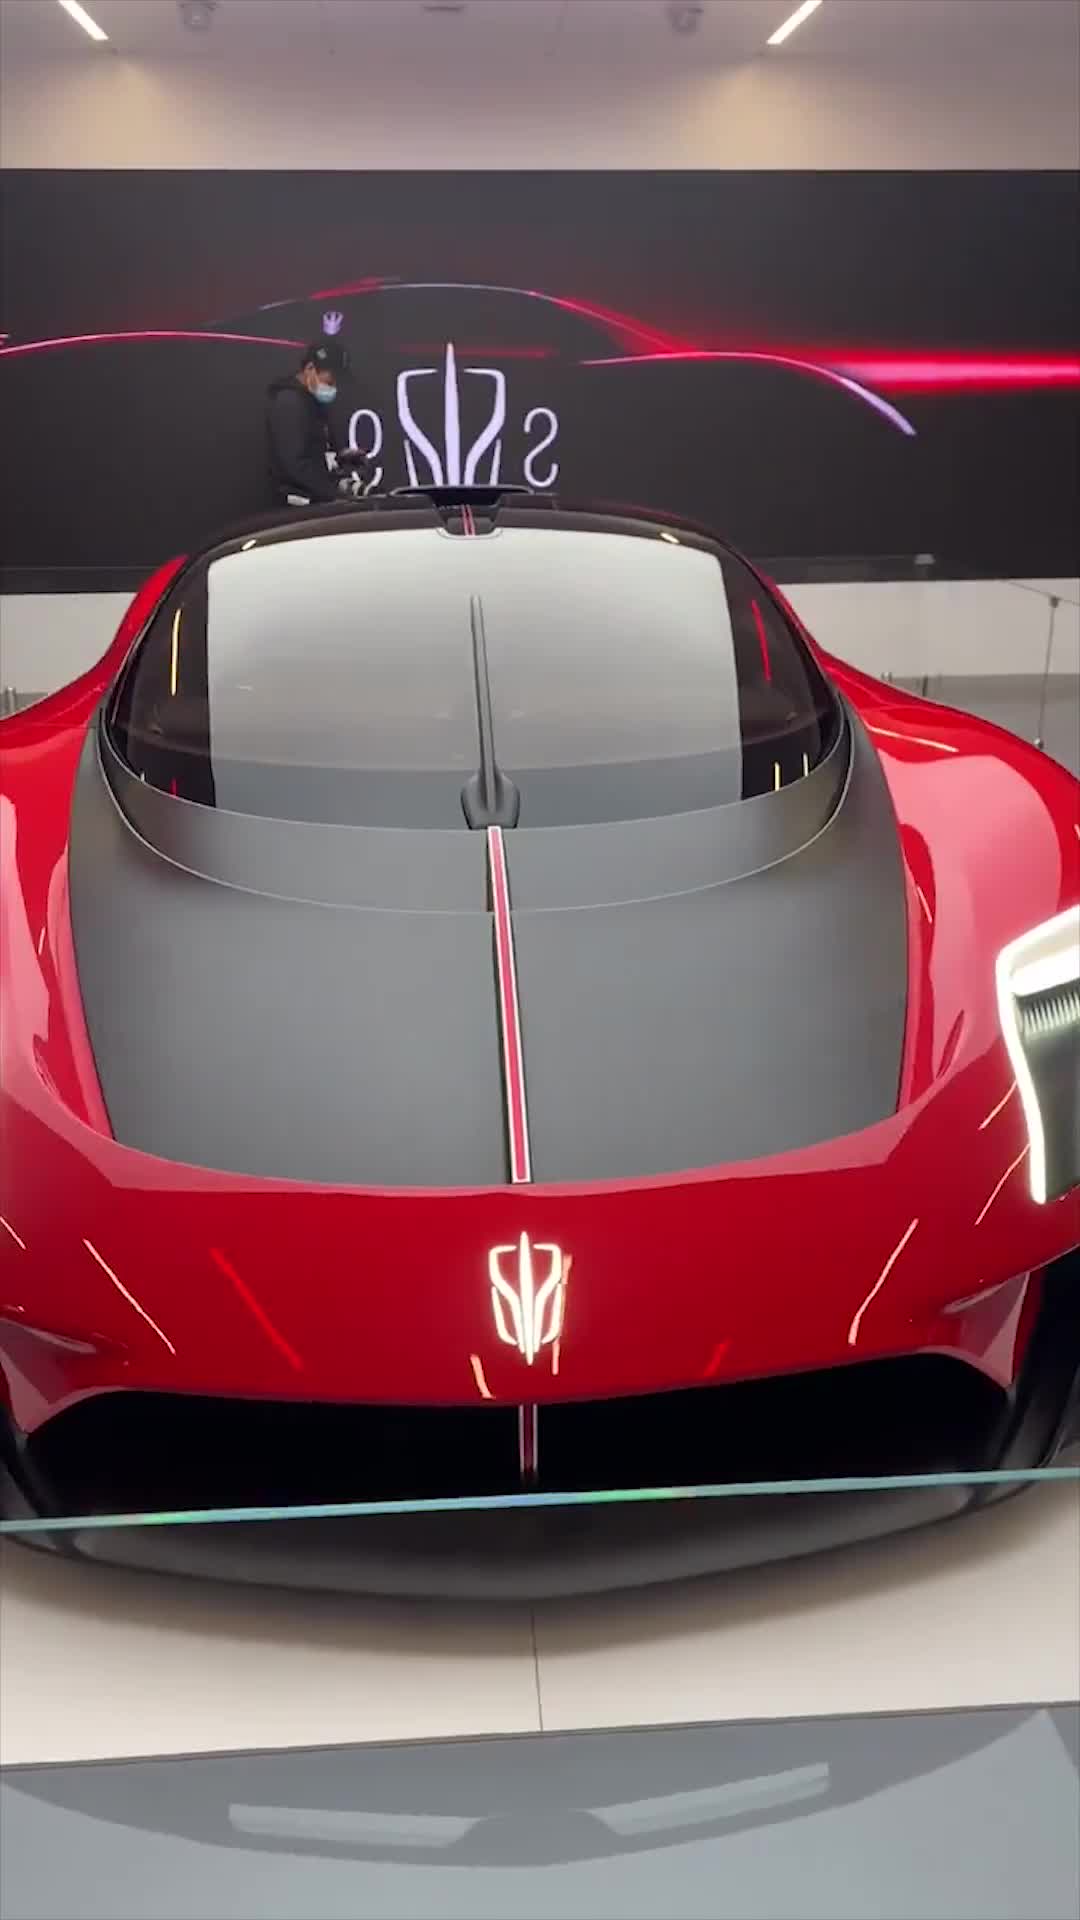 2021上海国际车展,最新款红旗s9超跑,新车标太帅了!